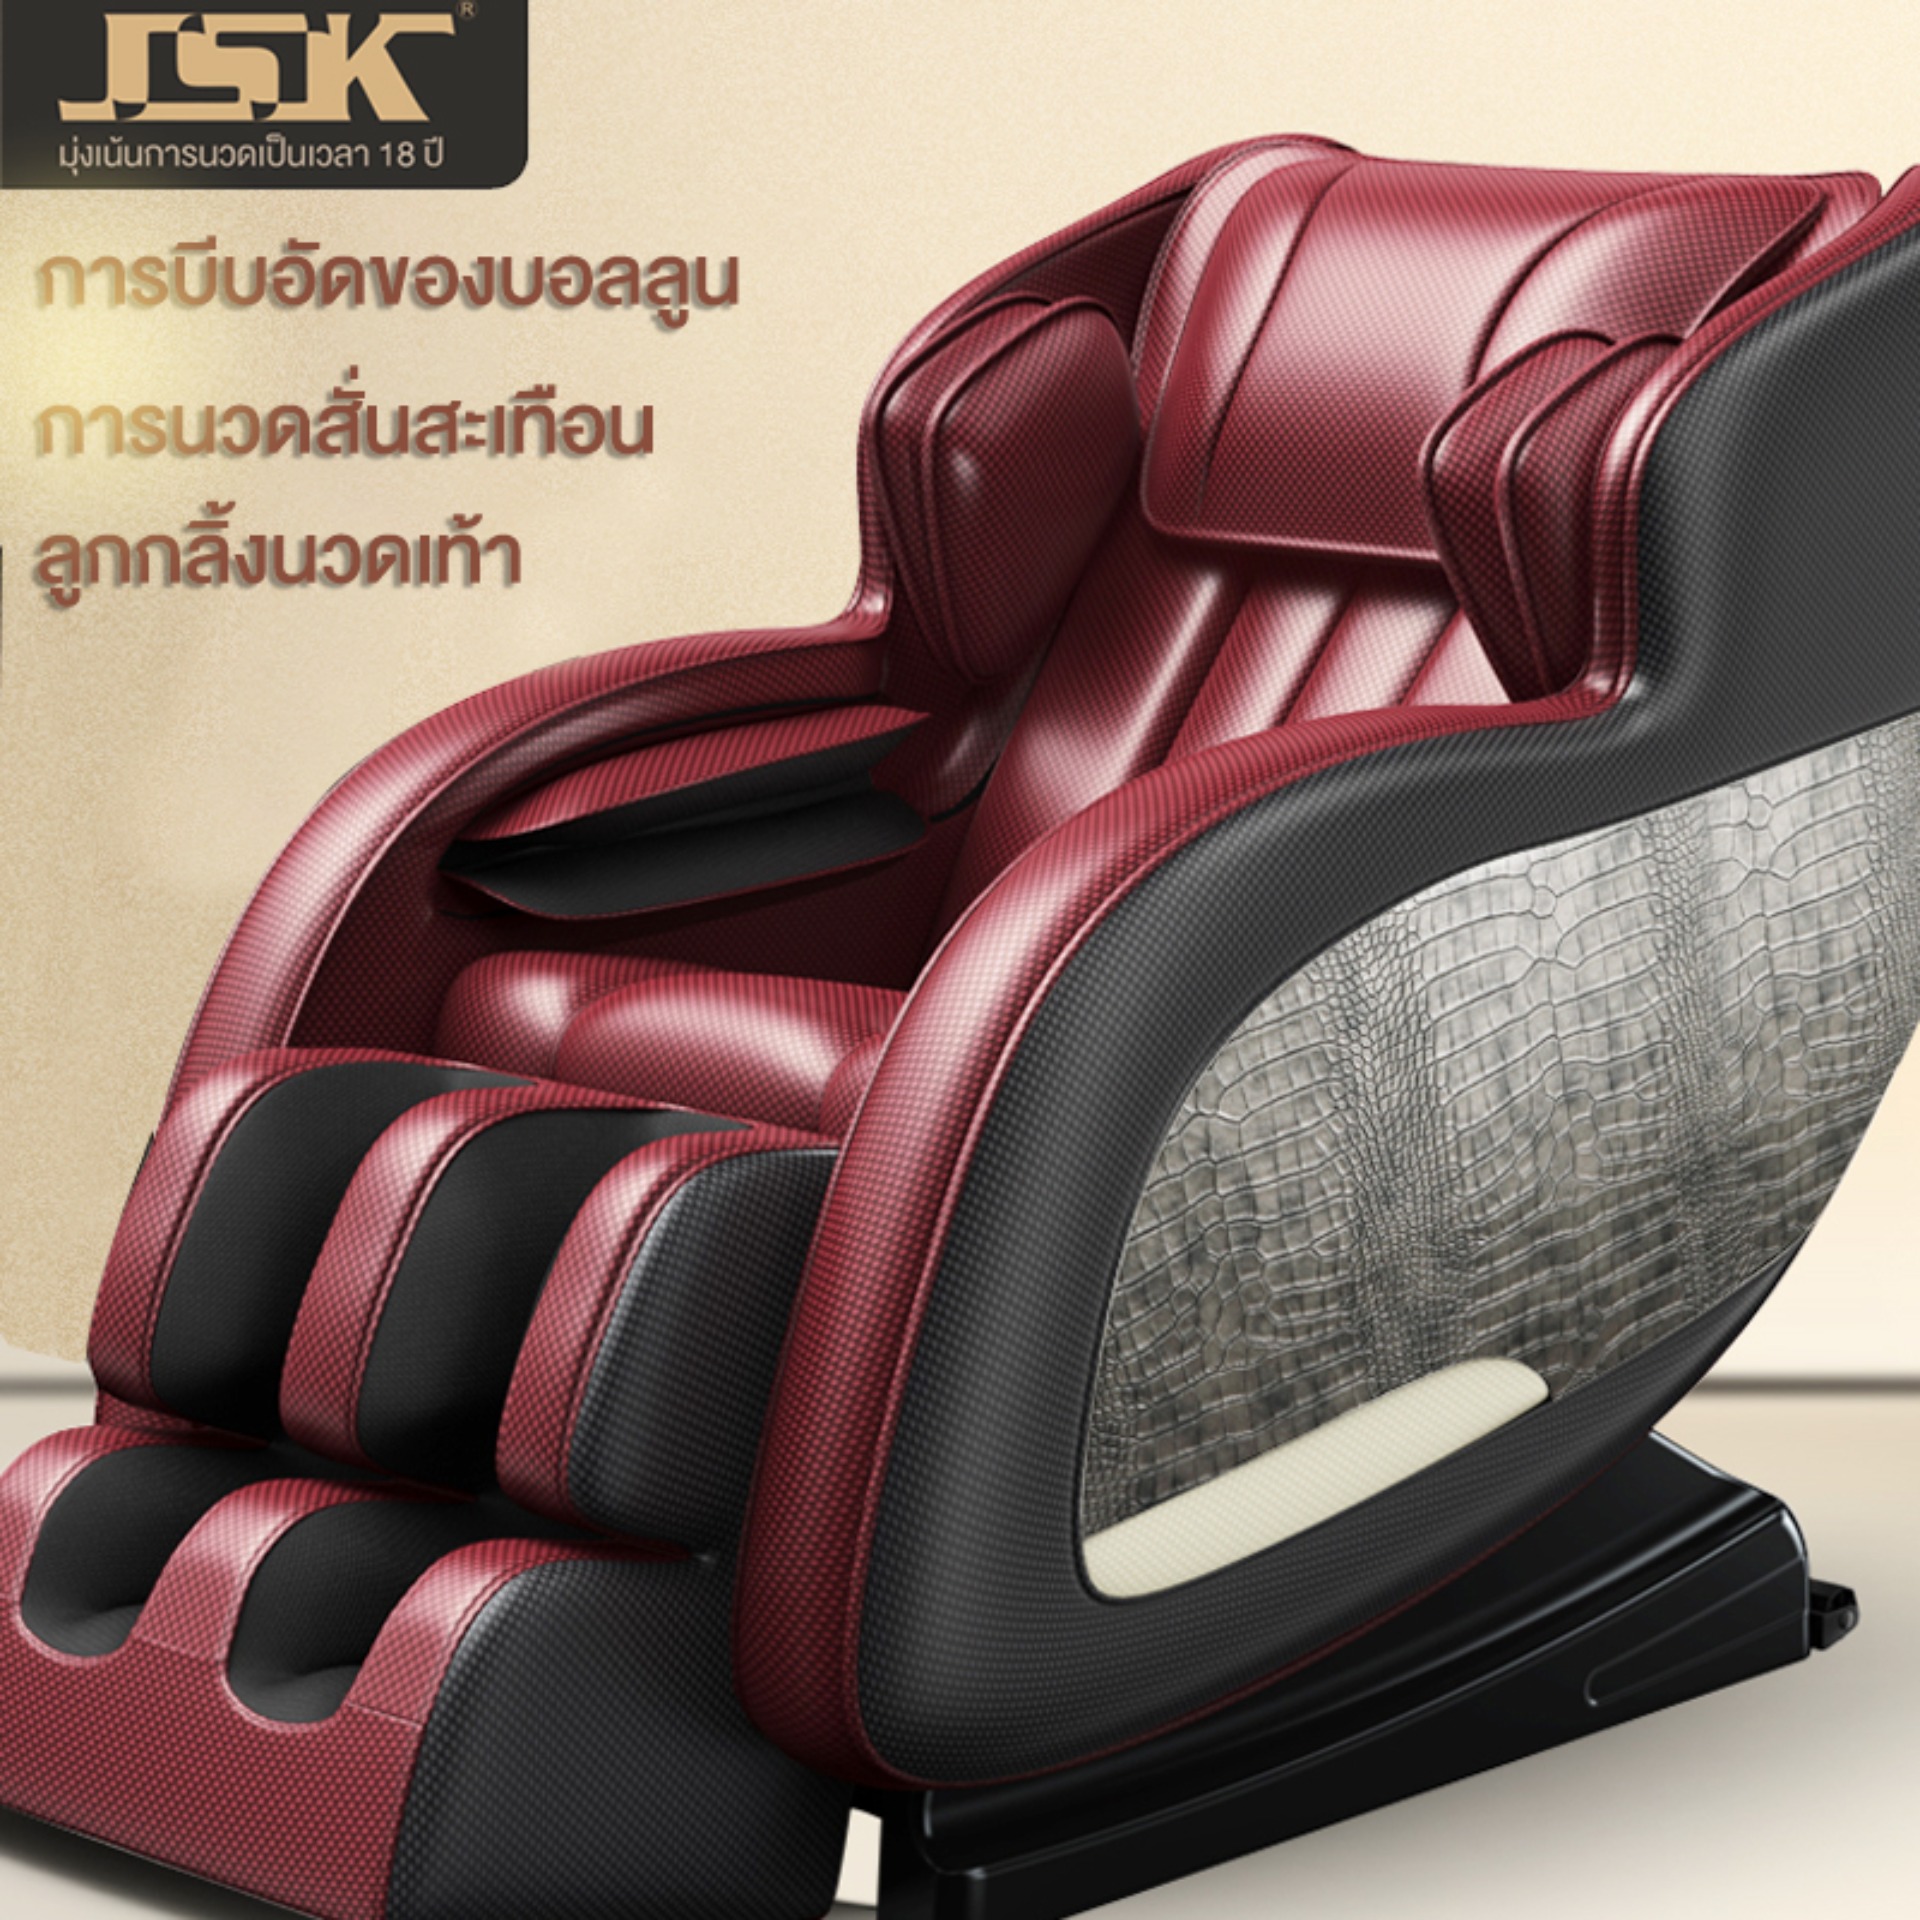 เก้าอี้นวด นวดไฟฟ้าเก้าอี้นวดไฟฟ้ามัลติฟังก์ชัน นวดเต็มรูปแบบ เก้าอี้นวดแคปซูลมัลติฟังก์ชั่น ประหยัดพื้นที่ดีไซน์หรูหรา JSK